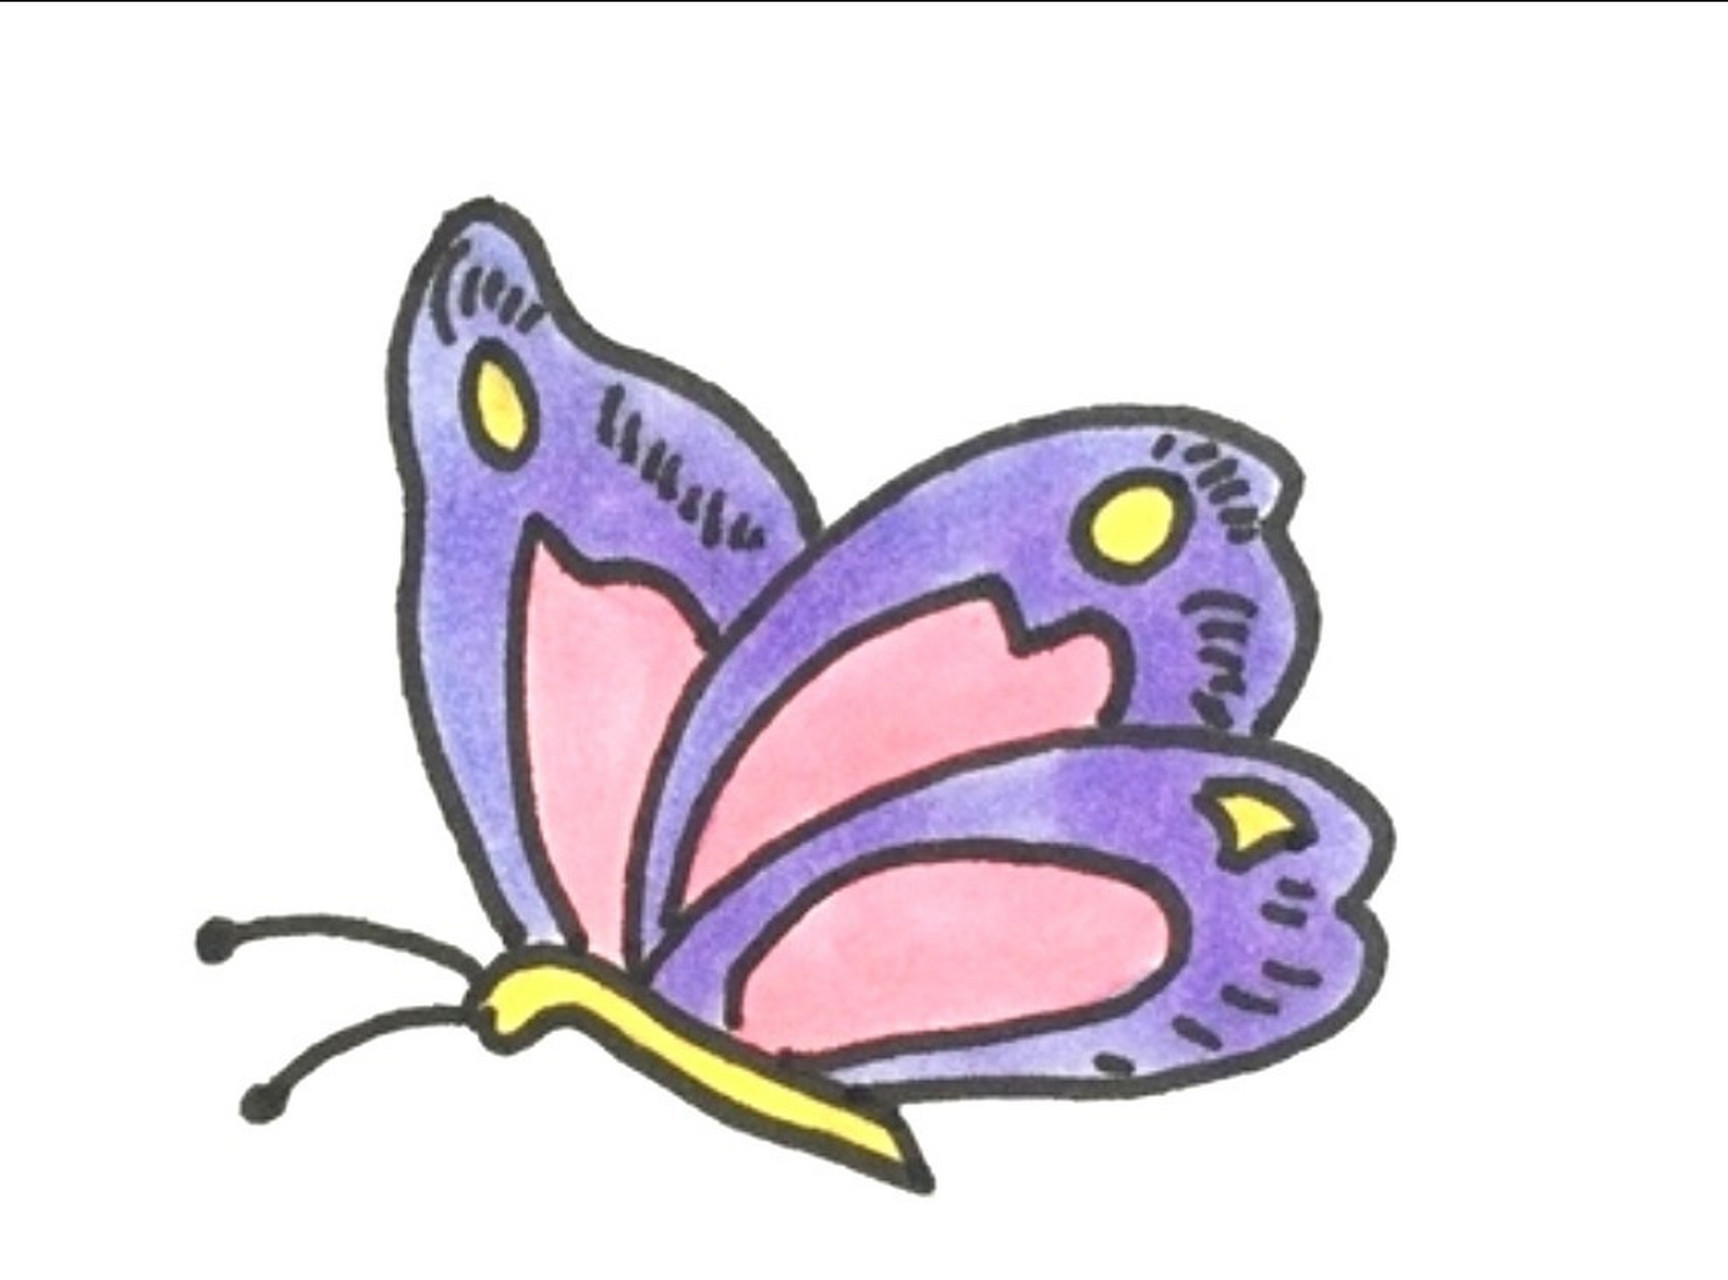 蝴蝶的简笔画简单图片